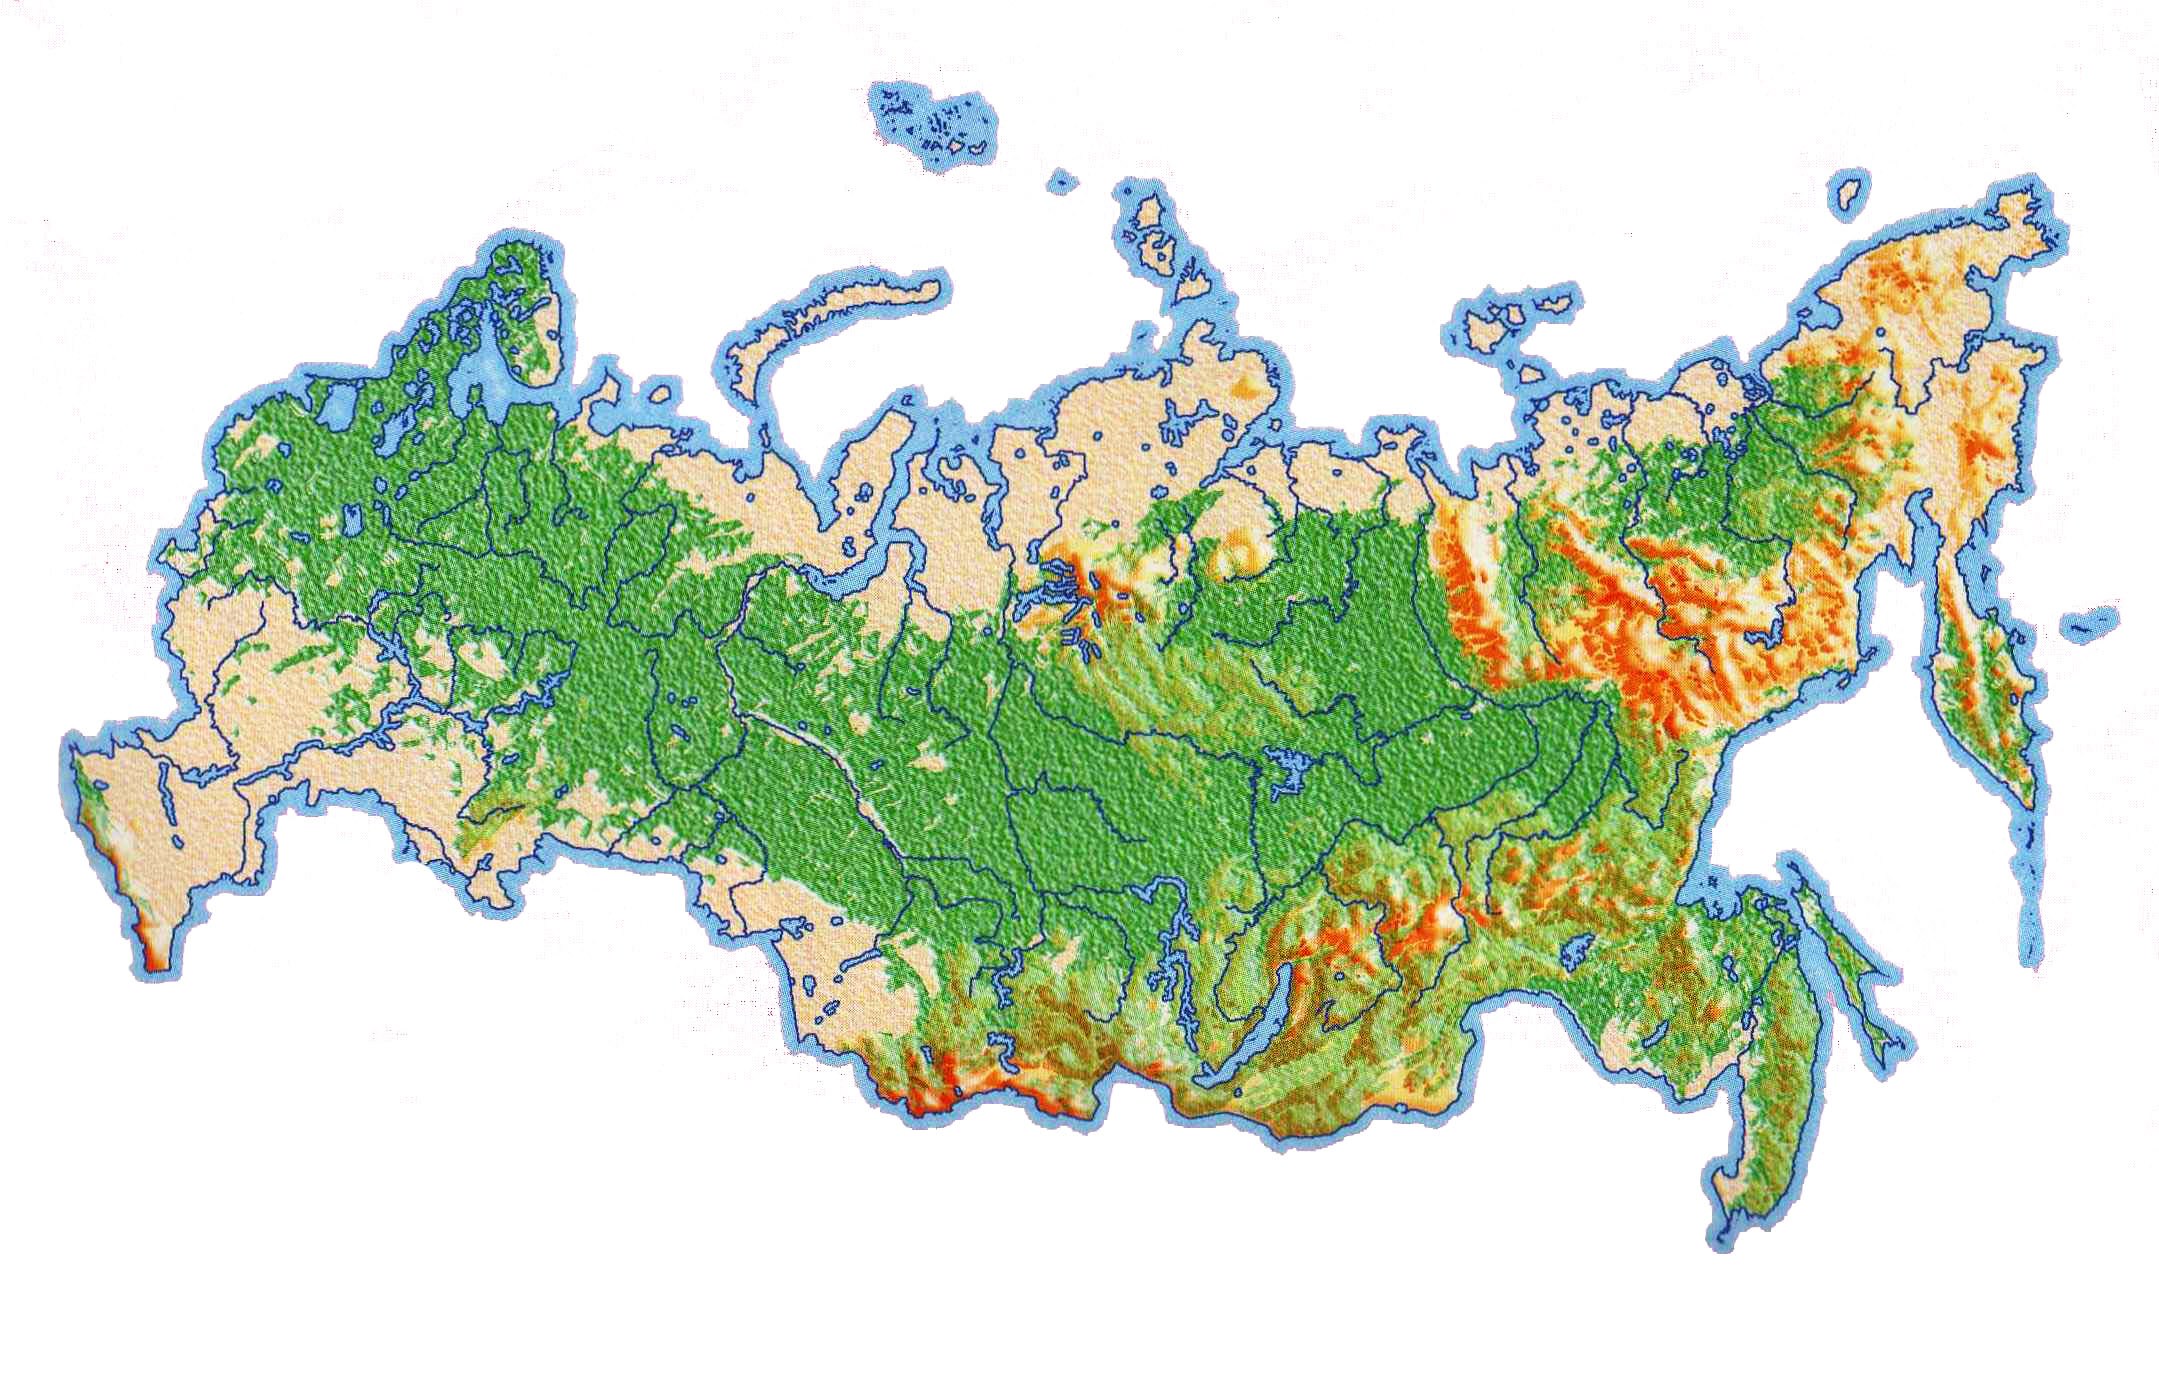 Реферат: Географическое положение России